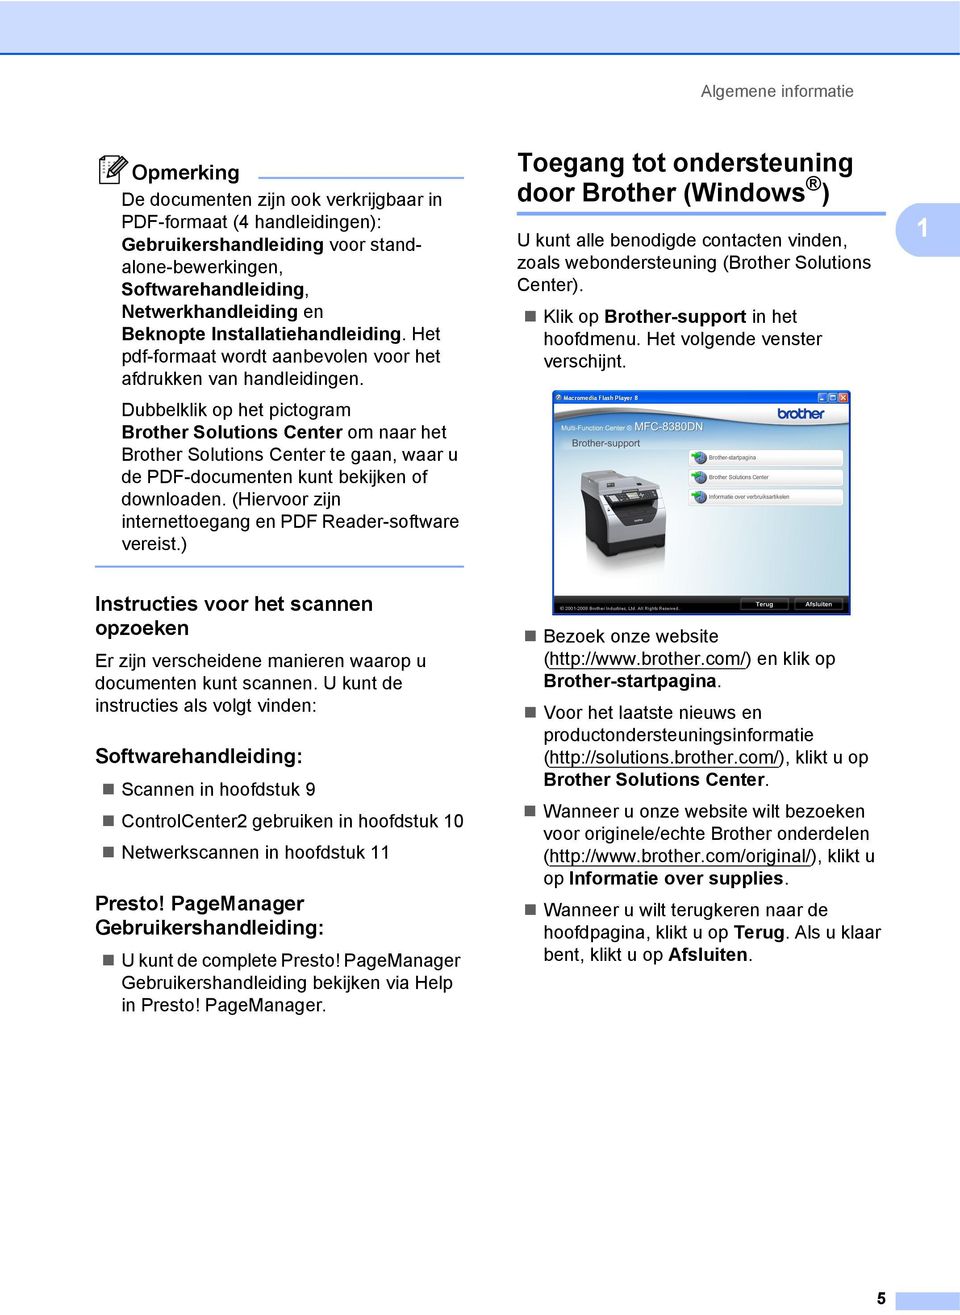 Dubbelklik op het pictogram Brother Solutions Center om naar het Brother Solutions Center te gaan, waar u de PDF-documenten kunt bekijken of downloaden.